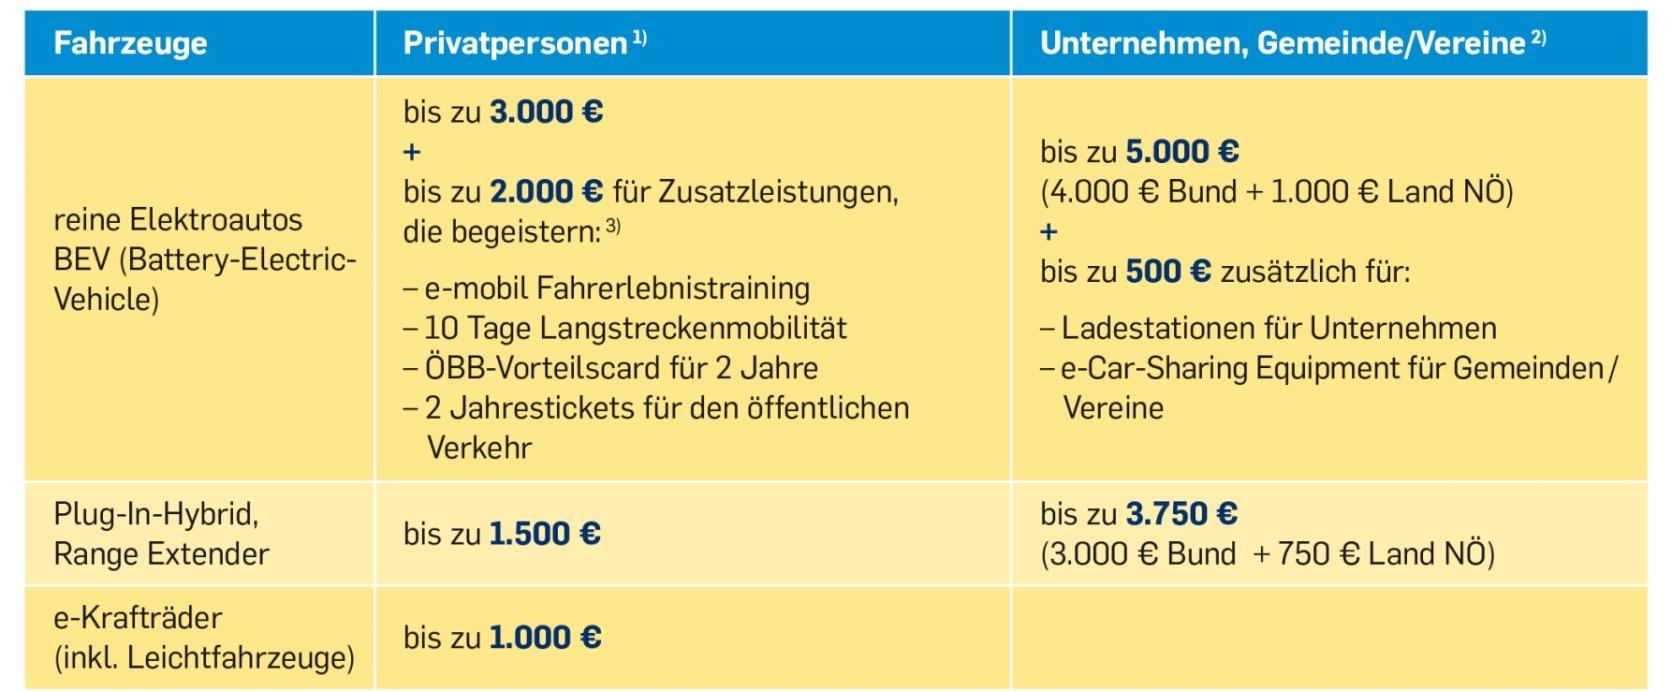 Förderungen in Niederösterreich 1) Anschaffungskosten über 47.000 sind nicht förderfähig. 2) Die Inanspruchnahme der Bundesförderung www.